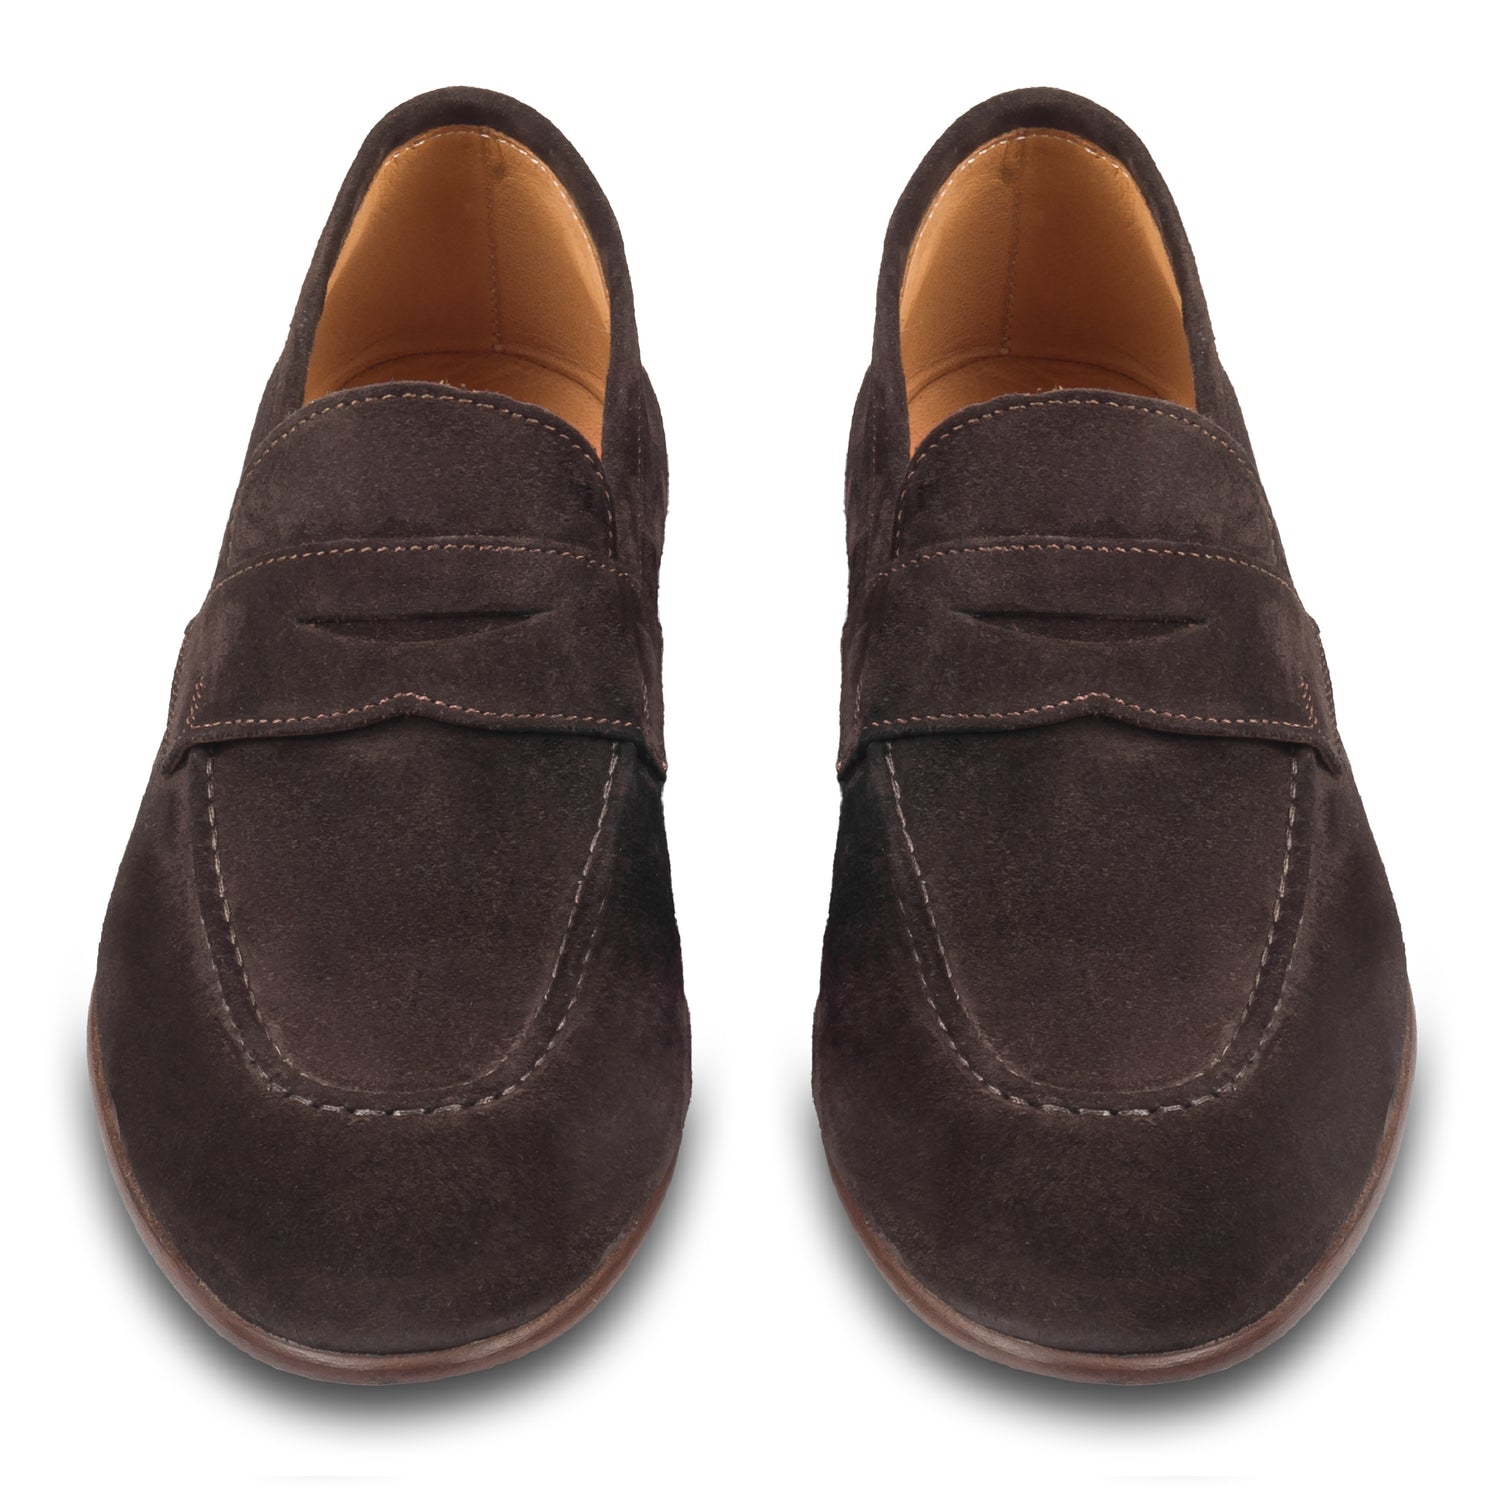 Brecos Italienische Herren-Loafer aus Veloursleder in dunkelbraun. Mit Leder-/Gummisohle. Durchgenäht und handgefertigt in Italien. Paarweise Ansicht von vorne.  